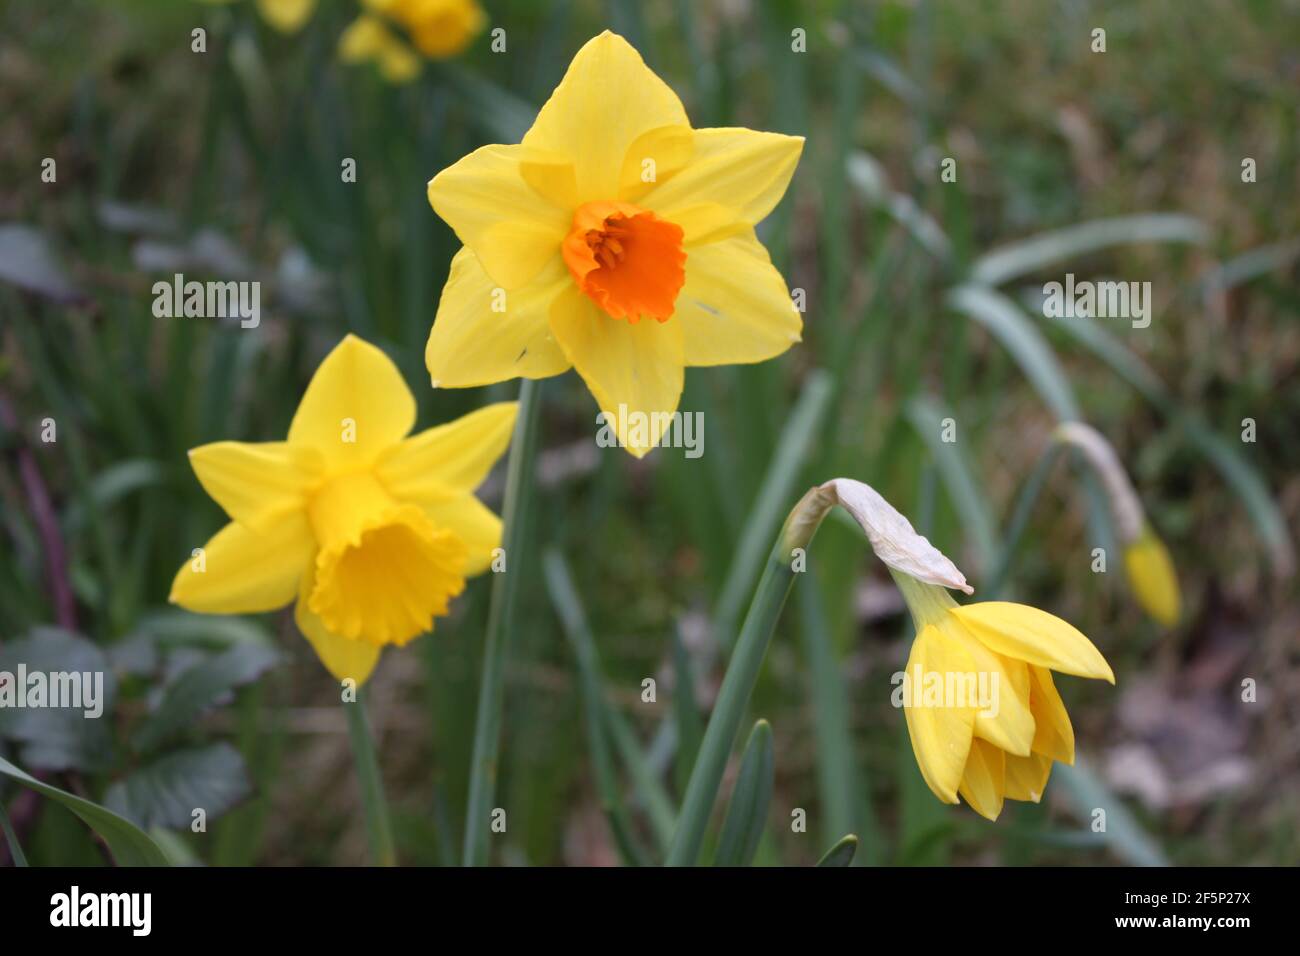 Gruppi di narcisi gialle che crescono accanto a sentieri escursionistici. Fiori primaverili che catturano il colore giallo in natura. Narcisi e il giardino primaverile, Regno Unito. Foto Stock